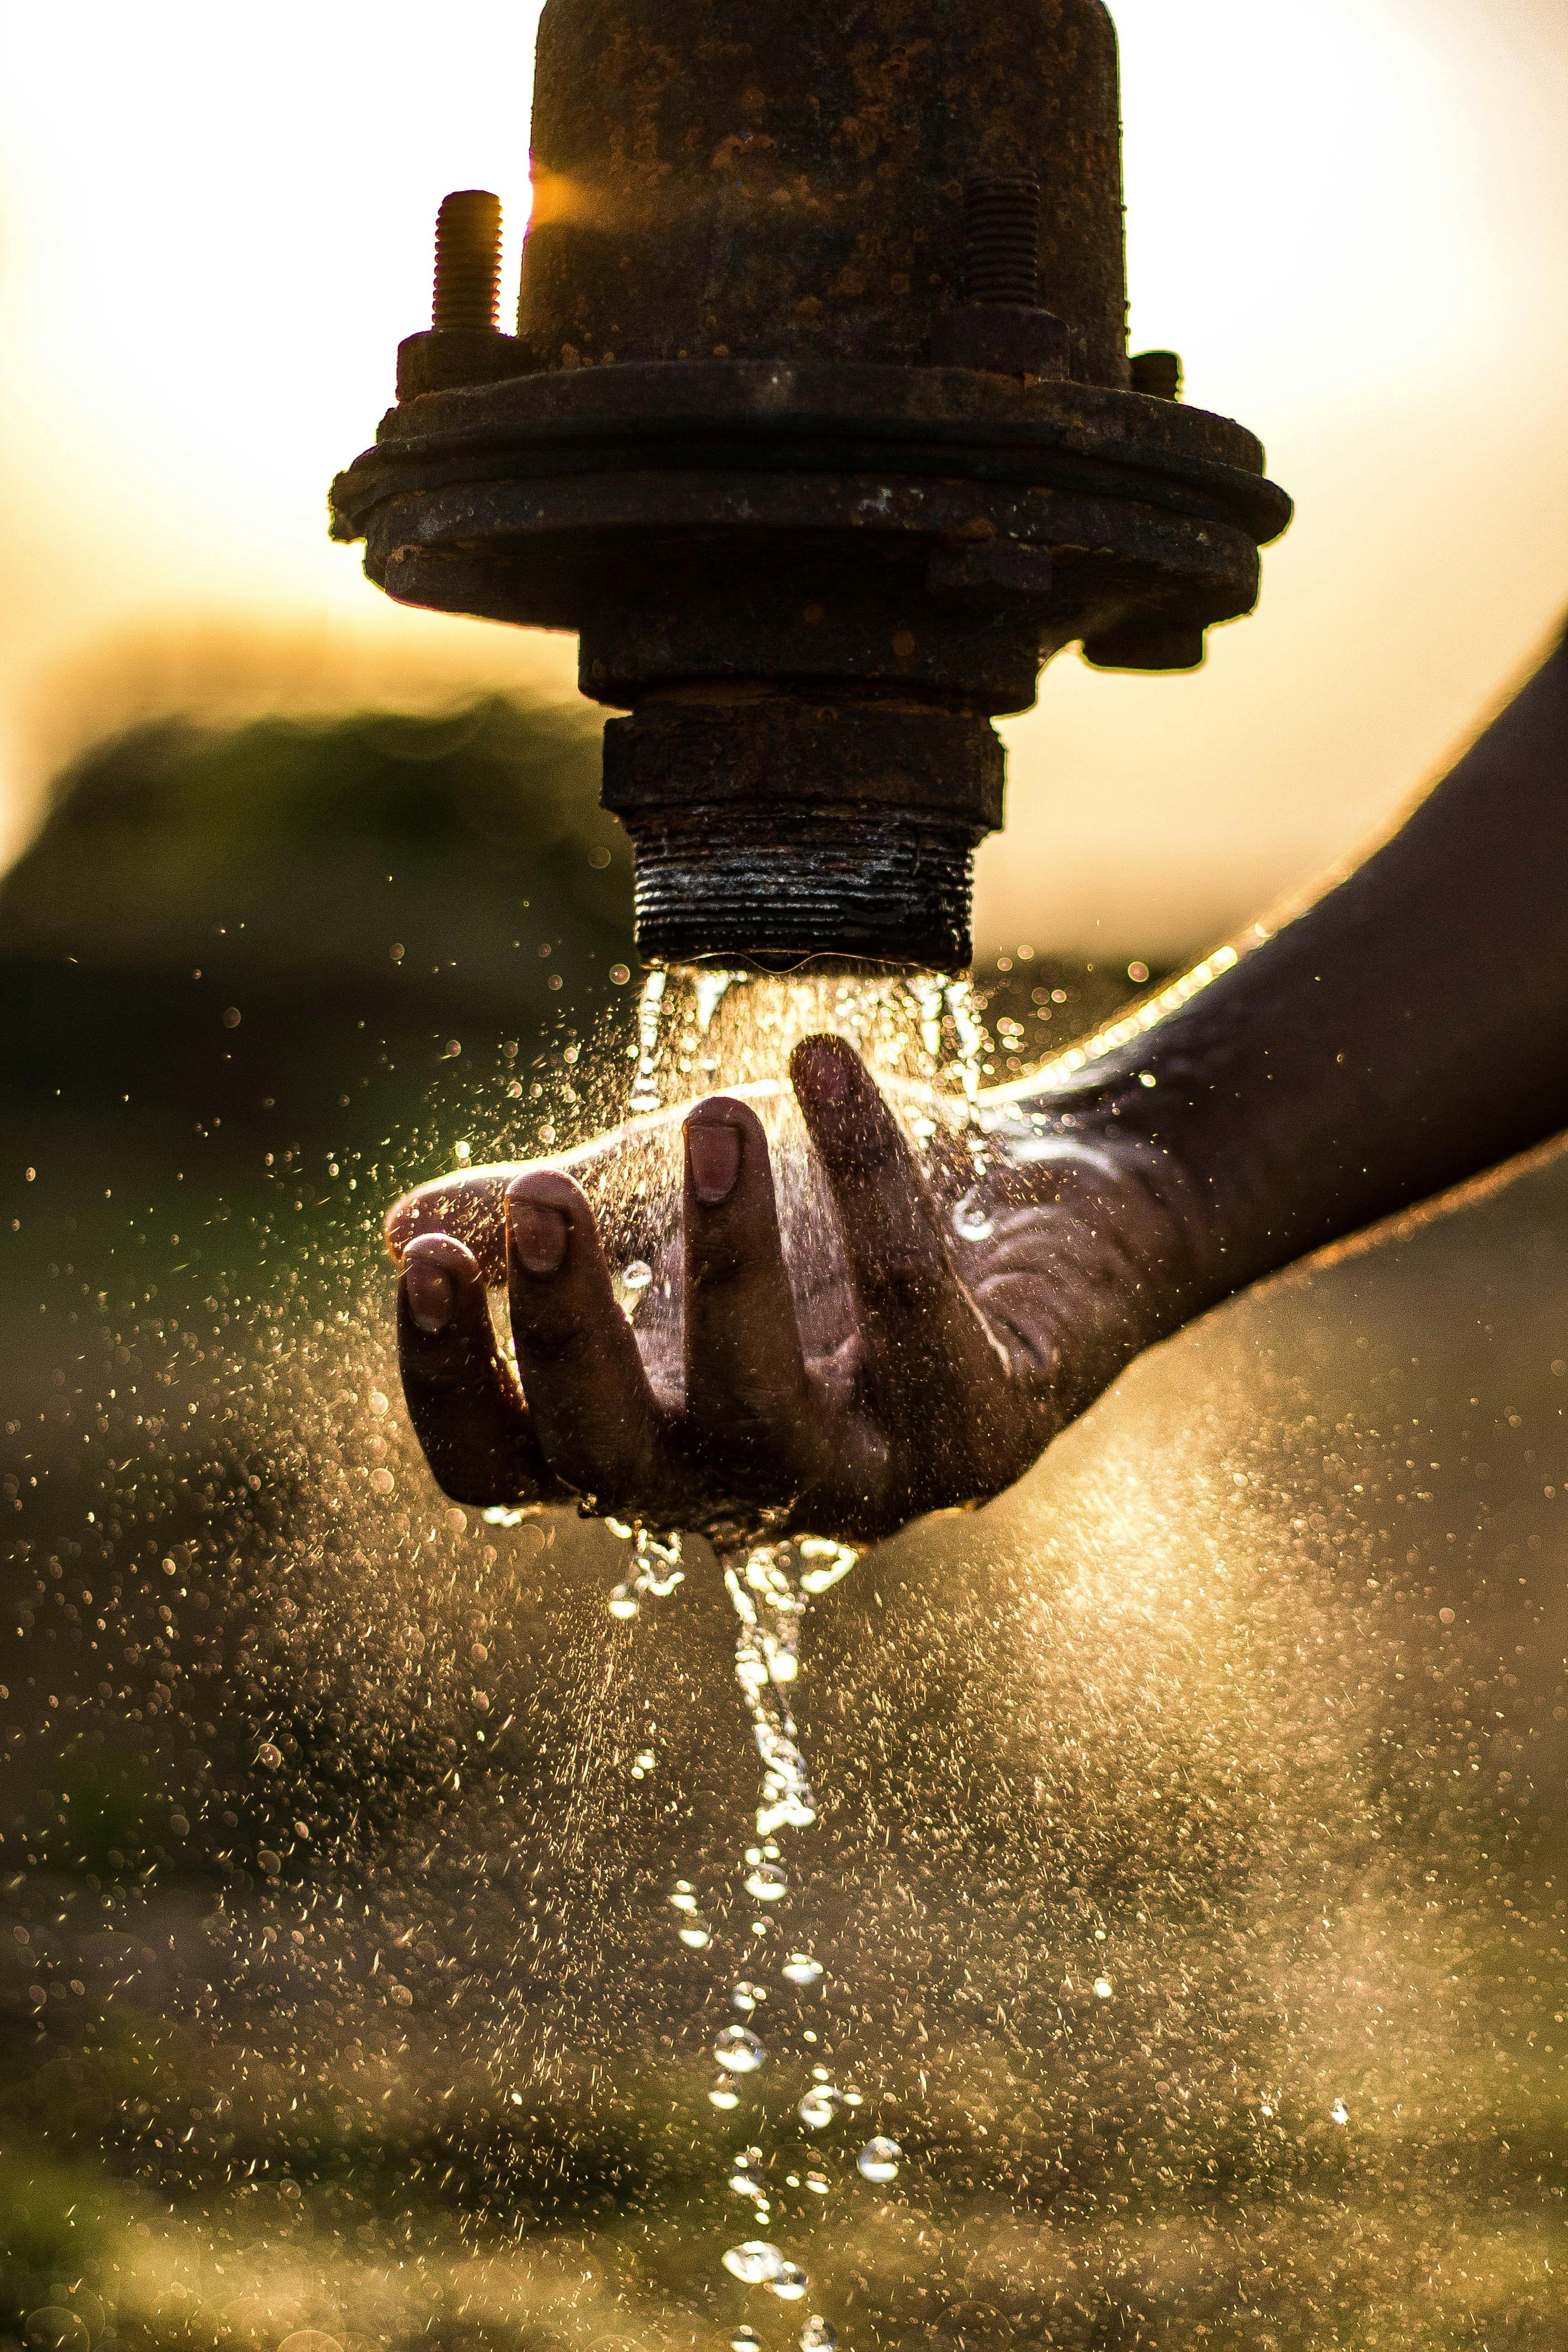 Image d'une main recevant de l'eau.